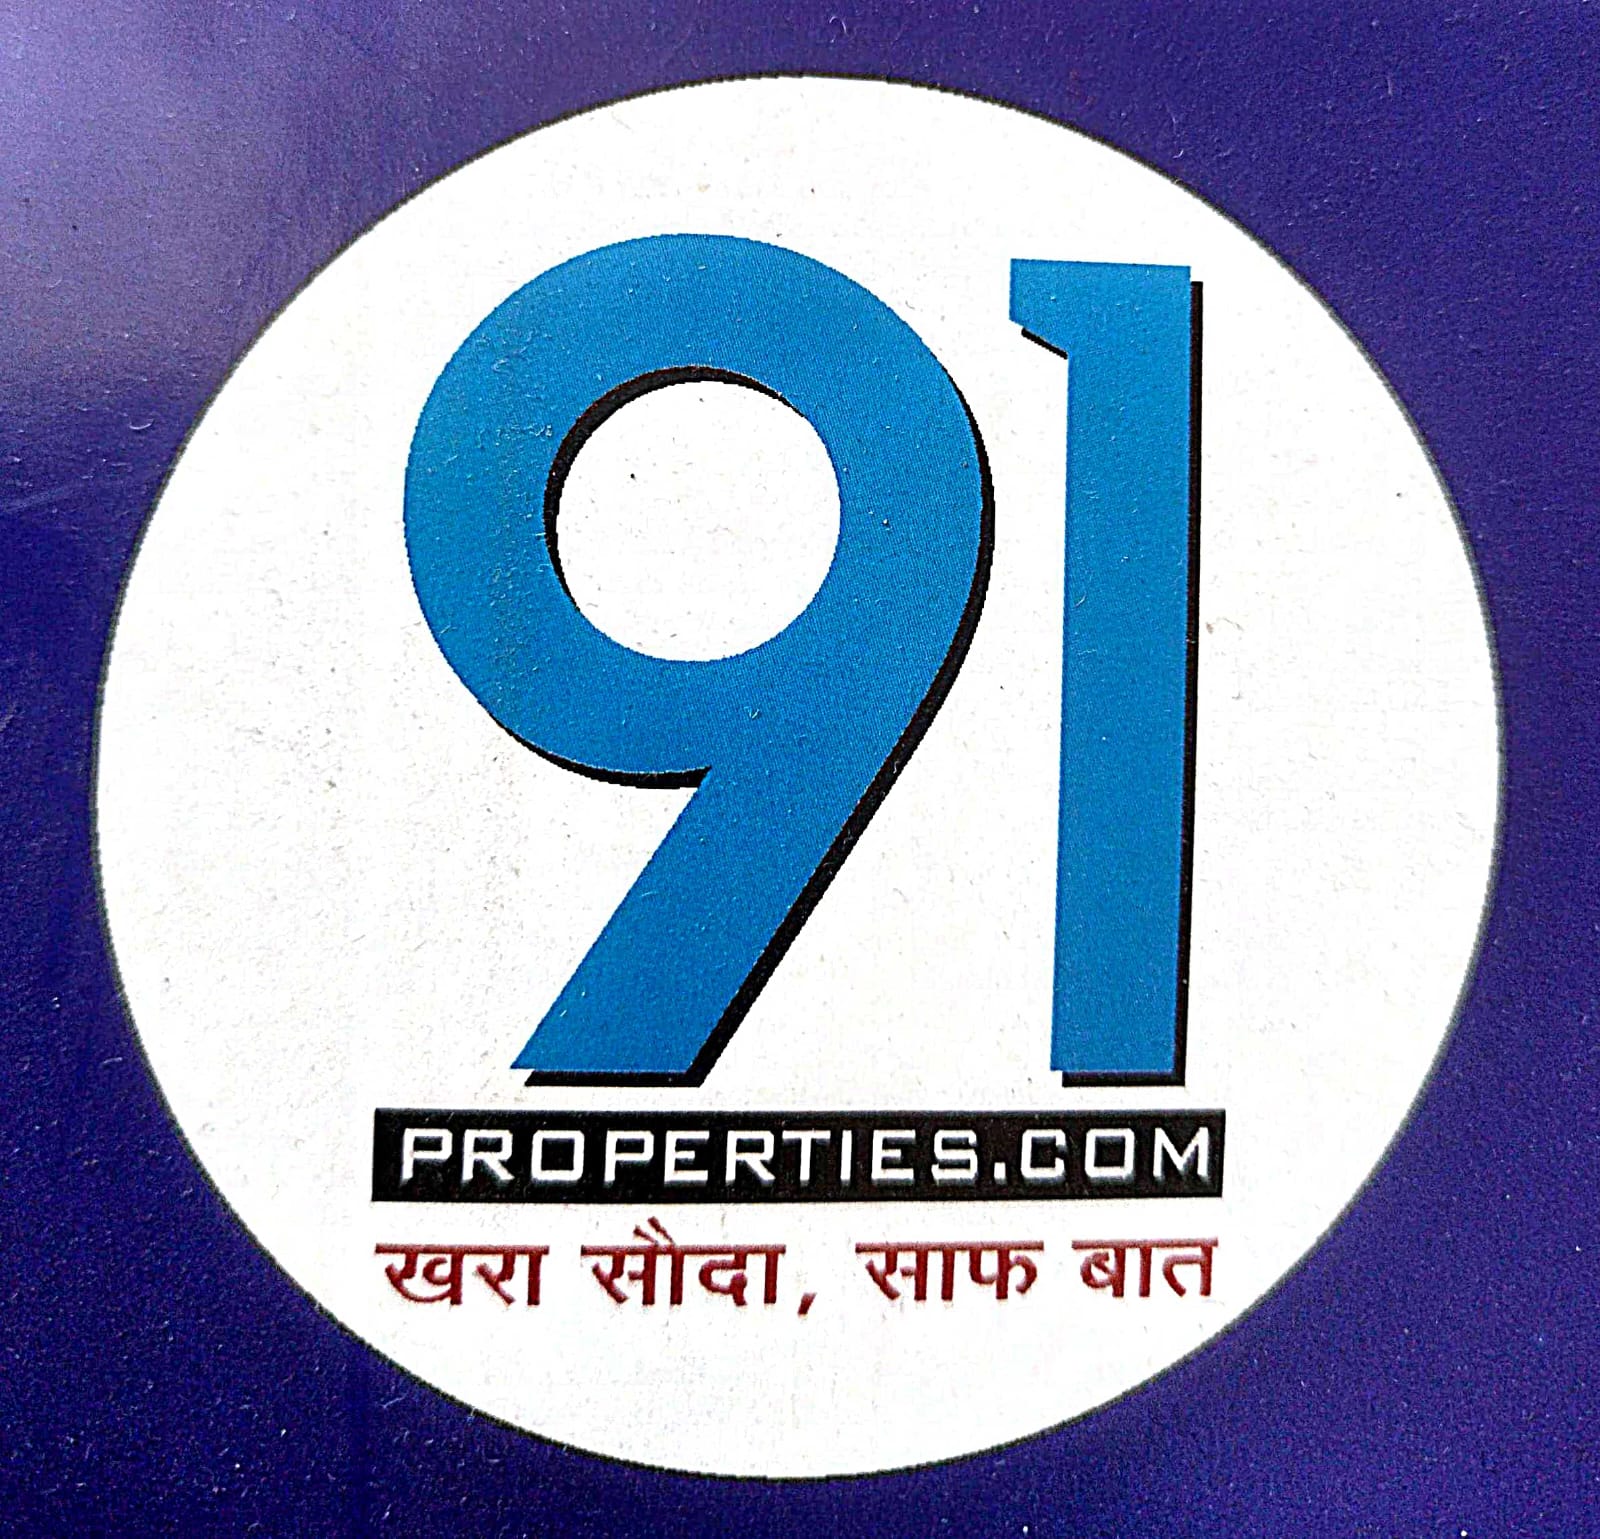 91 Properties